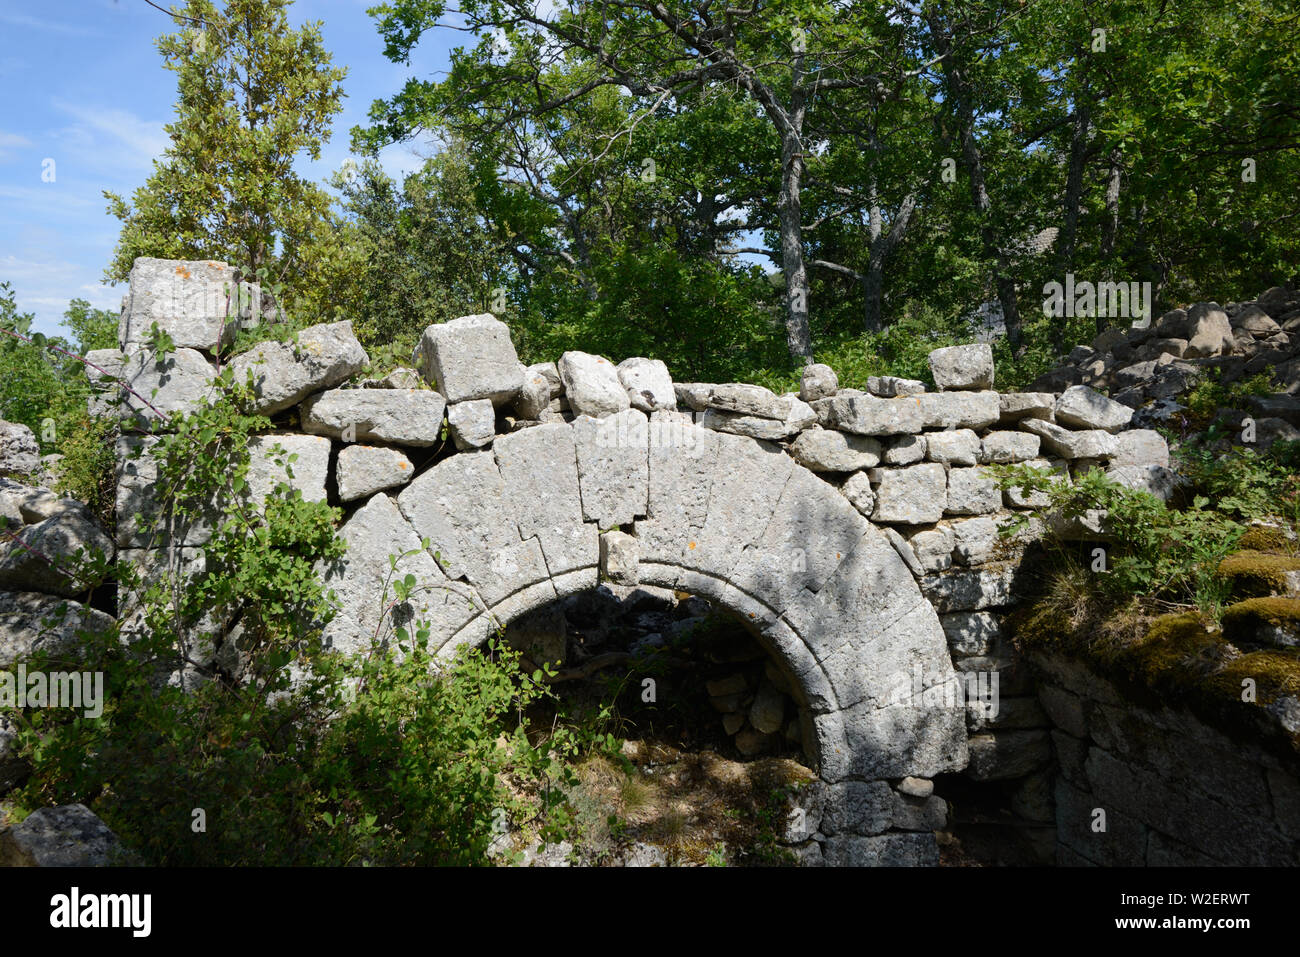 Parzialmente interrato arcata in pietra di rovinata casa comunale o la casa medioevale in Buoux Fort, o Fort de Buoux, Luberon Provence Francia Foto Stock